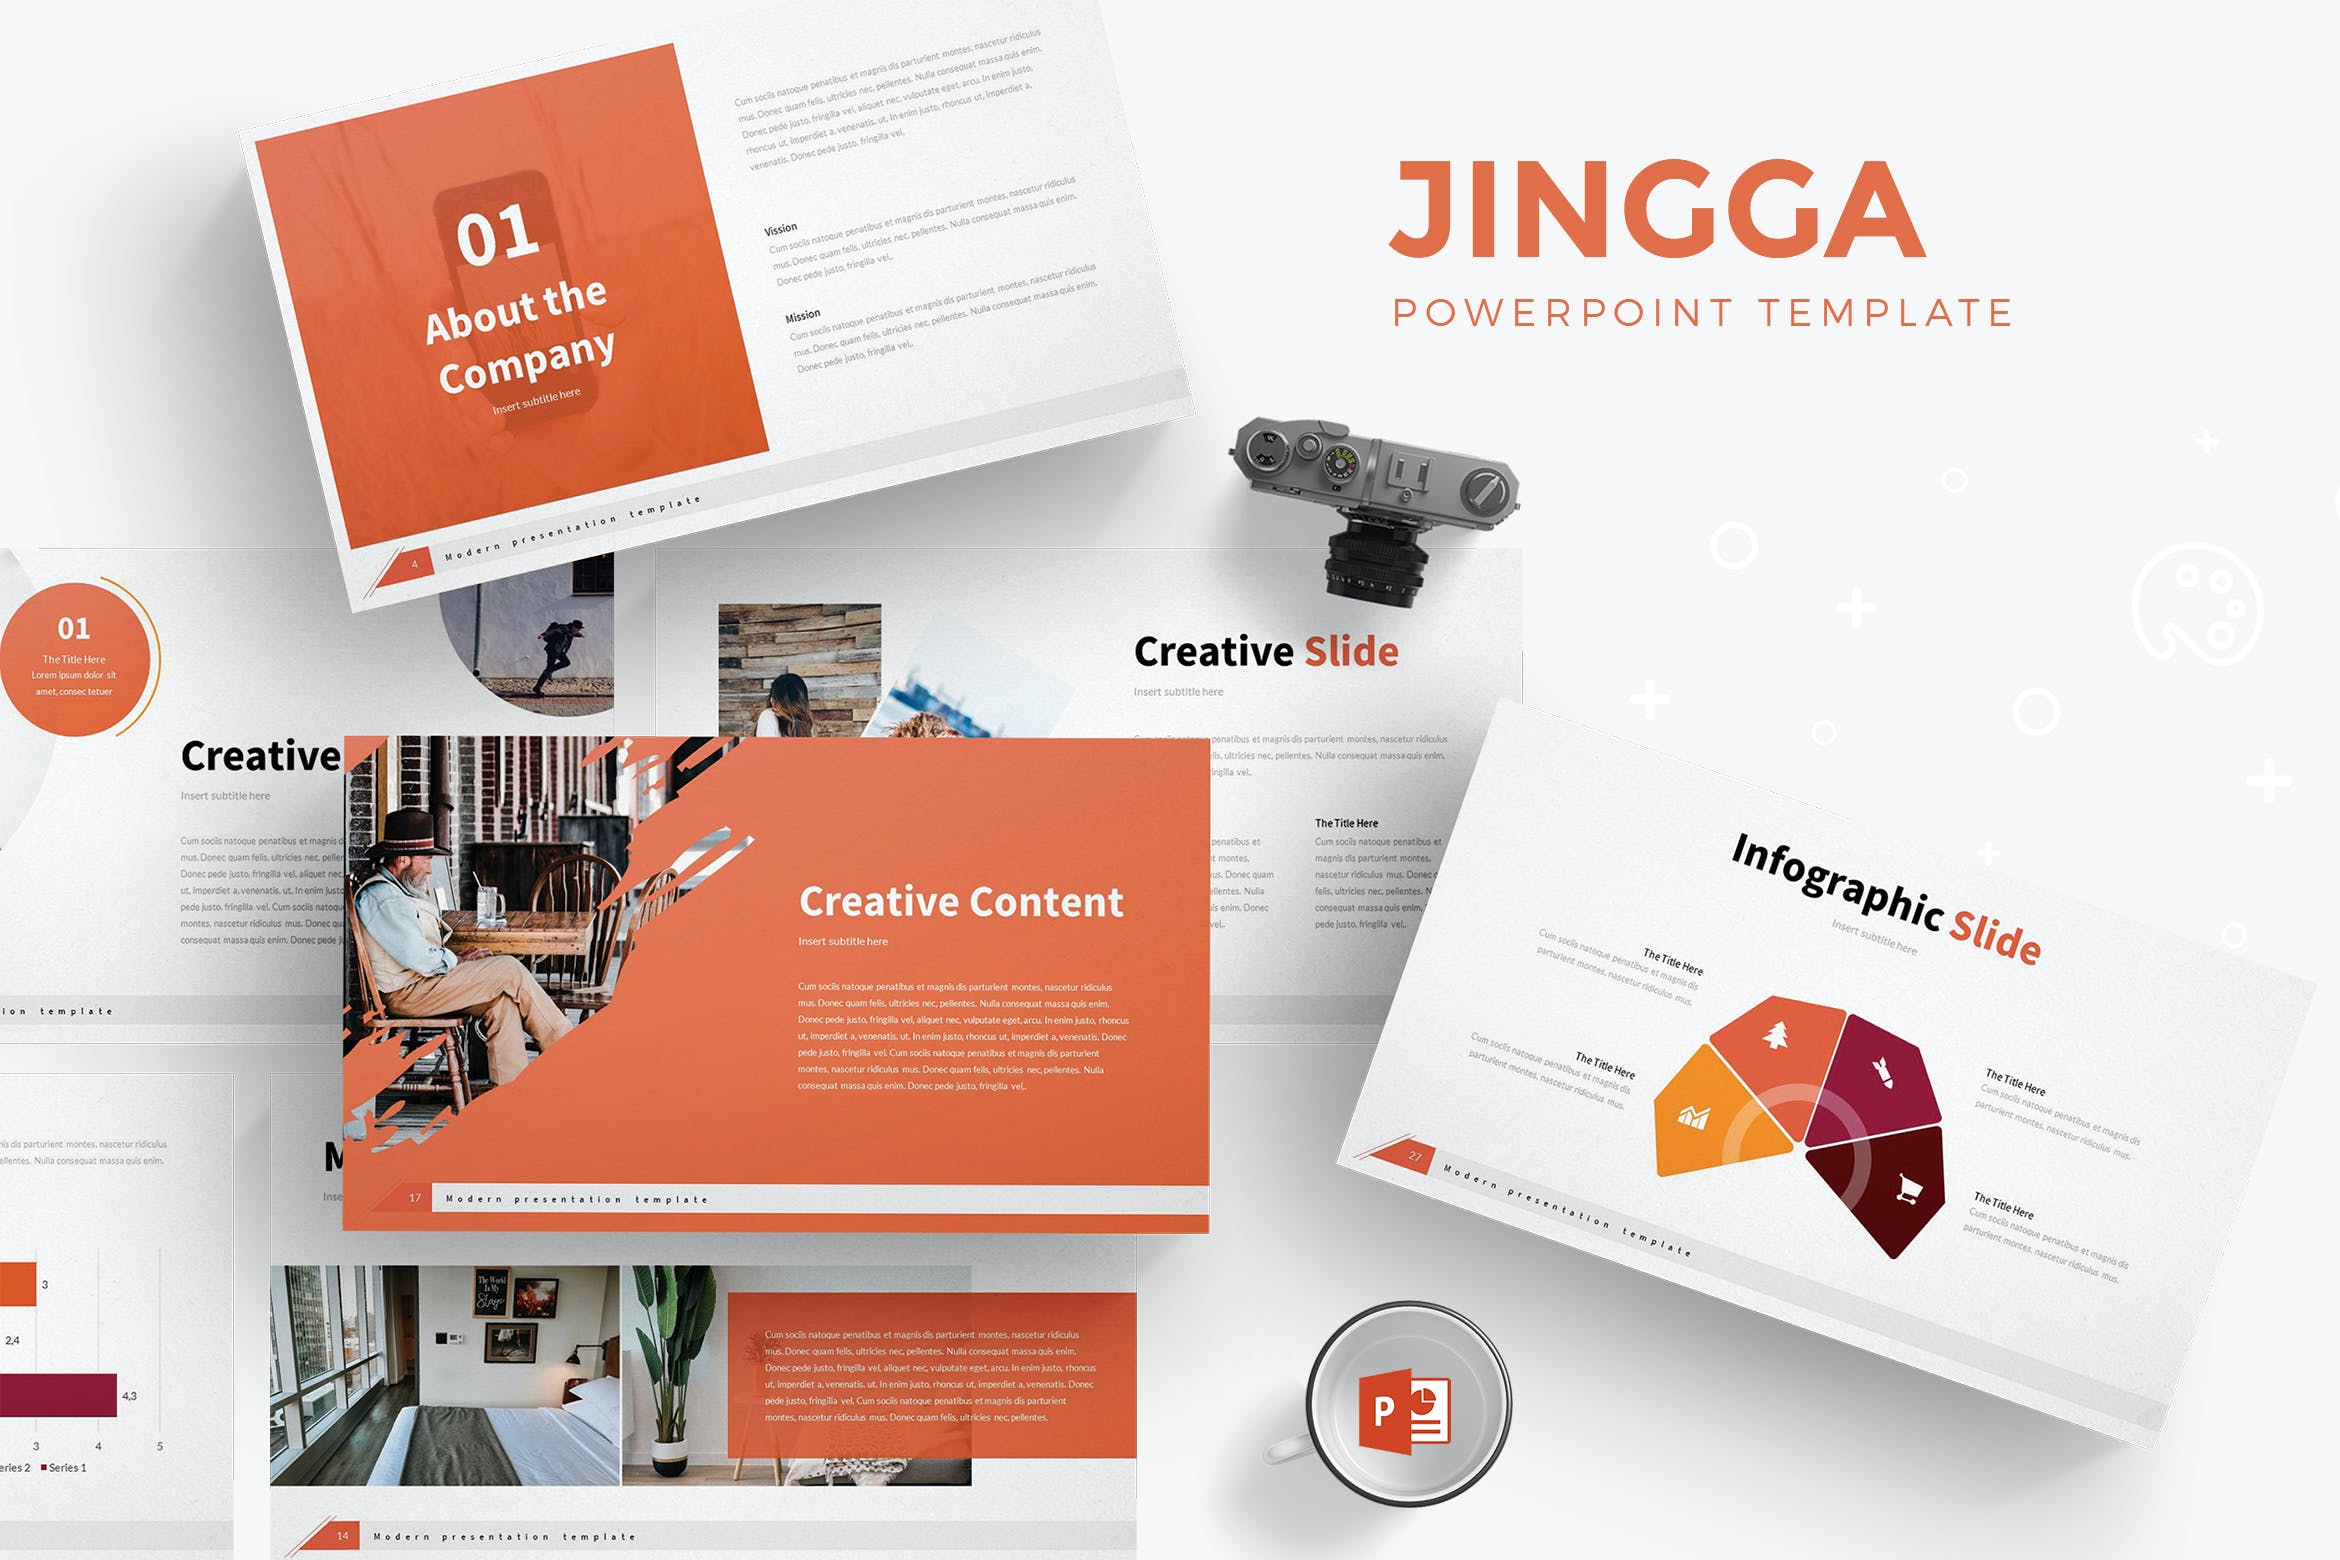 简约布局设计Powerpoint幻灯片模板 Jingga – Powerpoint Template设计素材模板